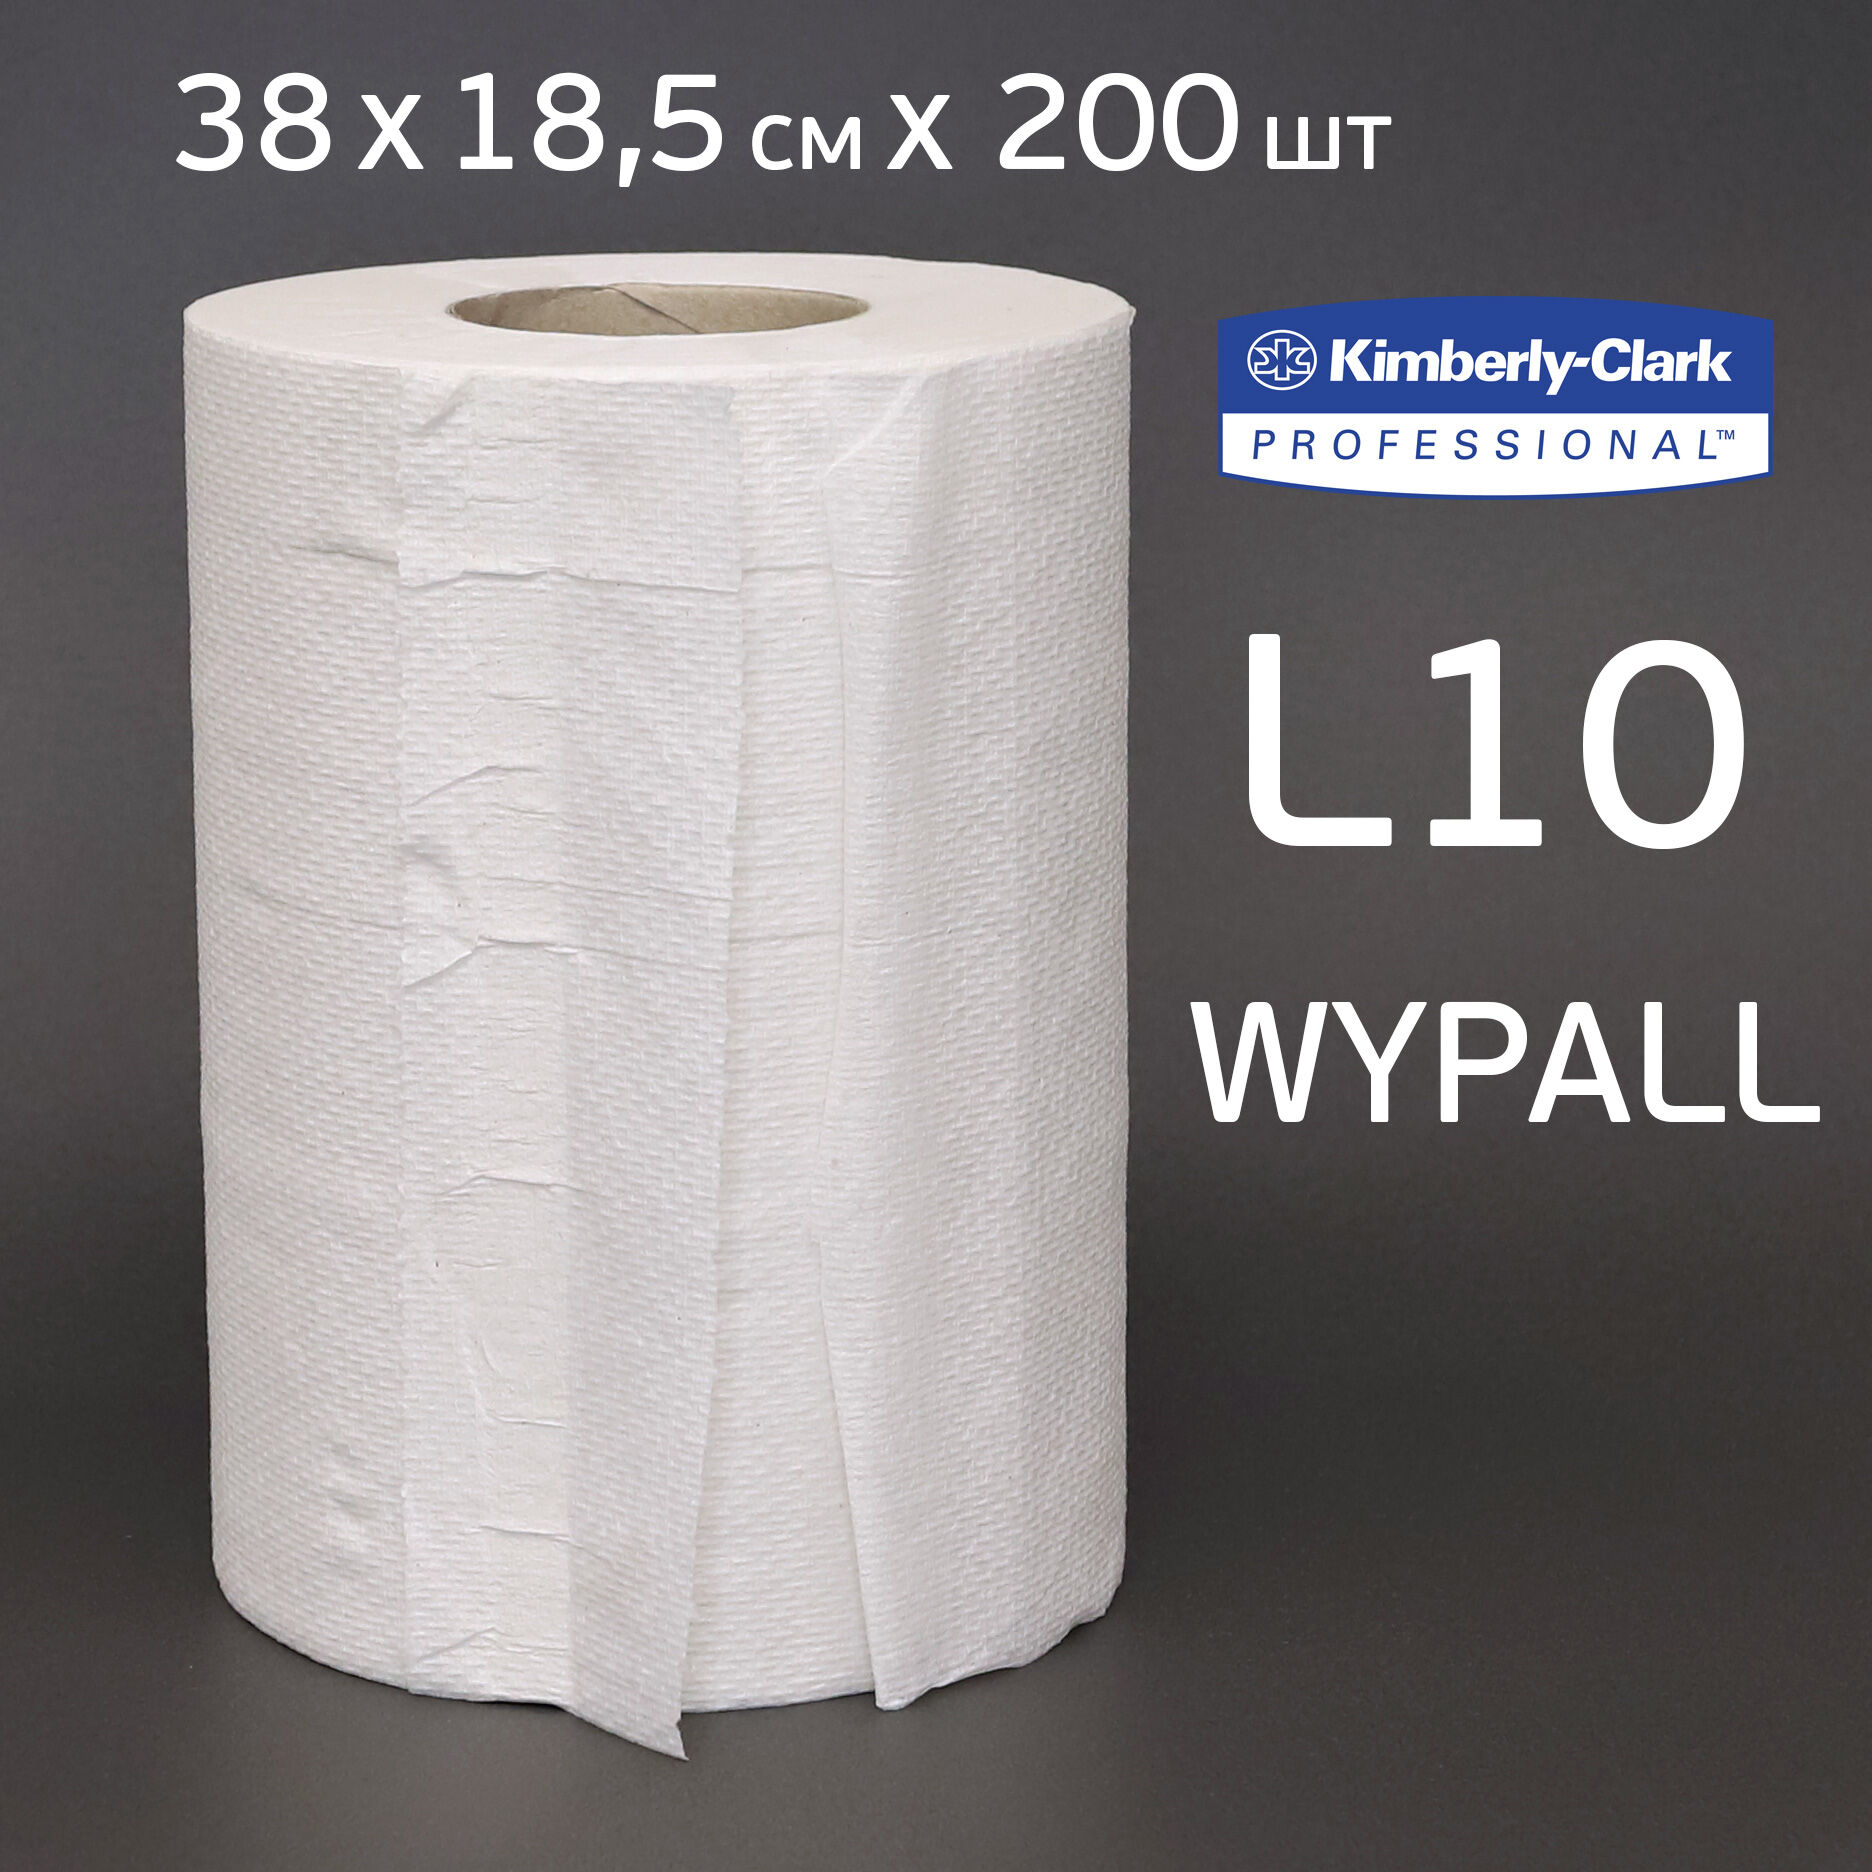 Салфетка WYPALL 7374 L10 рулон (38х18,5см х 200шт) протирочная одноразовая